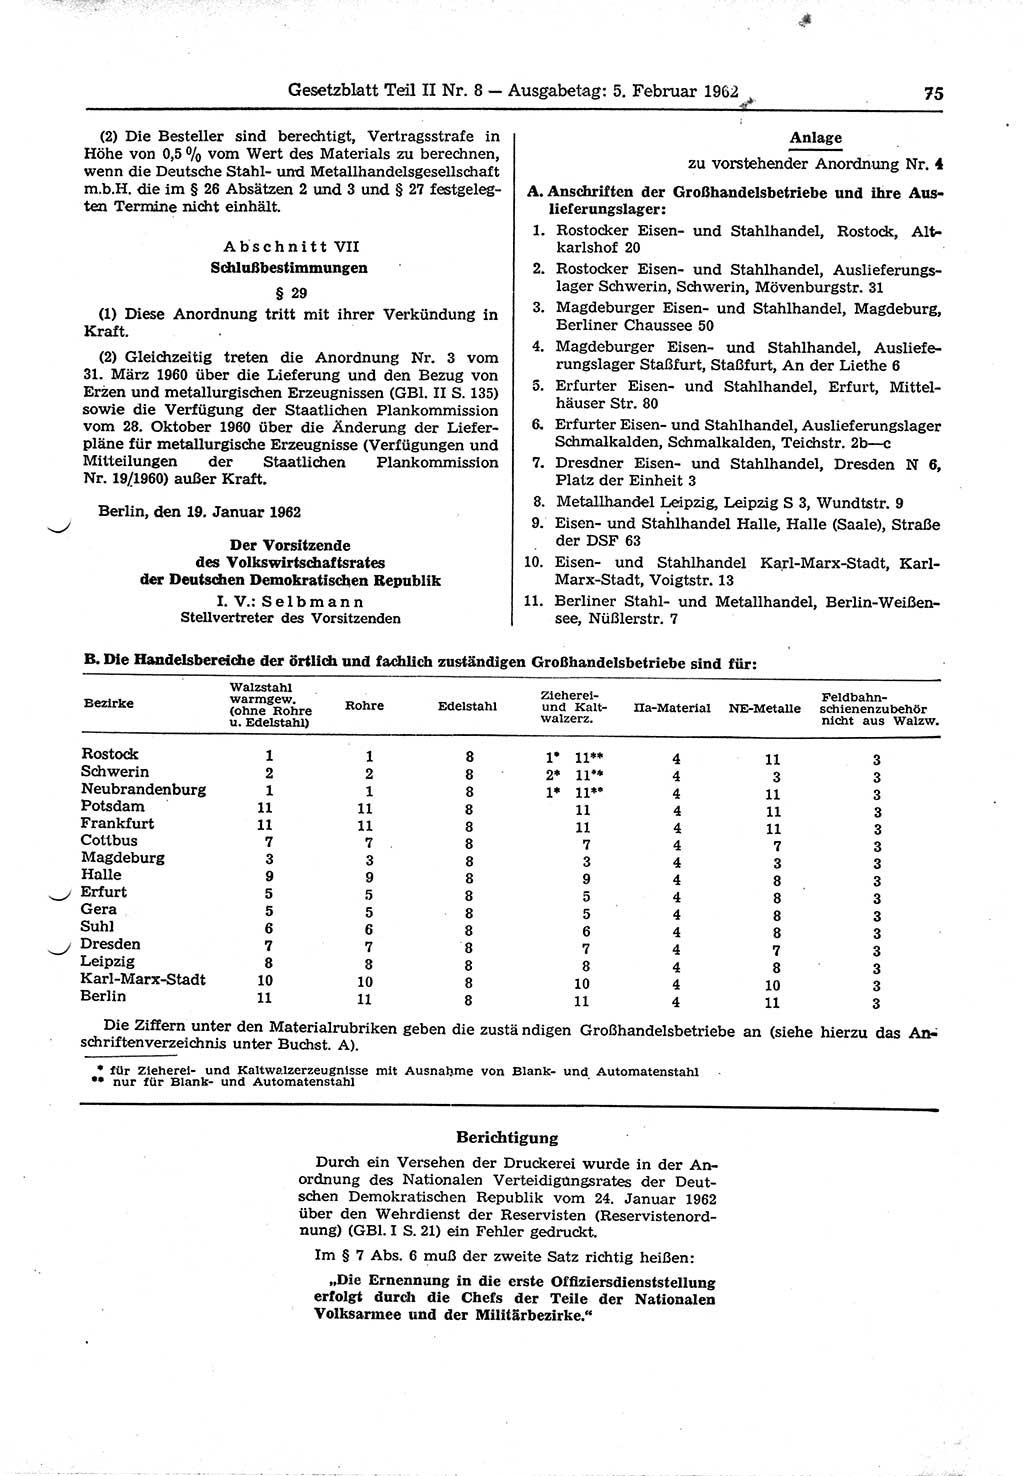 Gesetzblatt (GBl.) der Deutschen Demokratischen Republik (DDR) Teil ⅠⅠ 1962, Seite 75 (GBl. DDR ⅠⅠ 1962, S. 75)